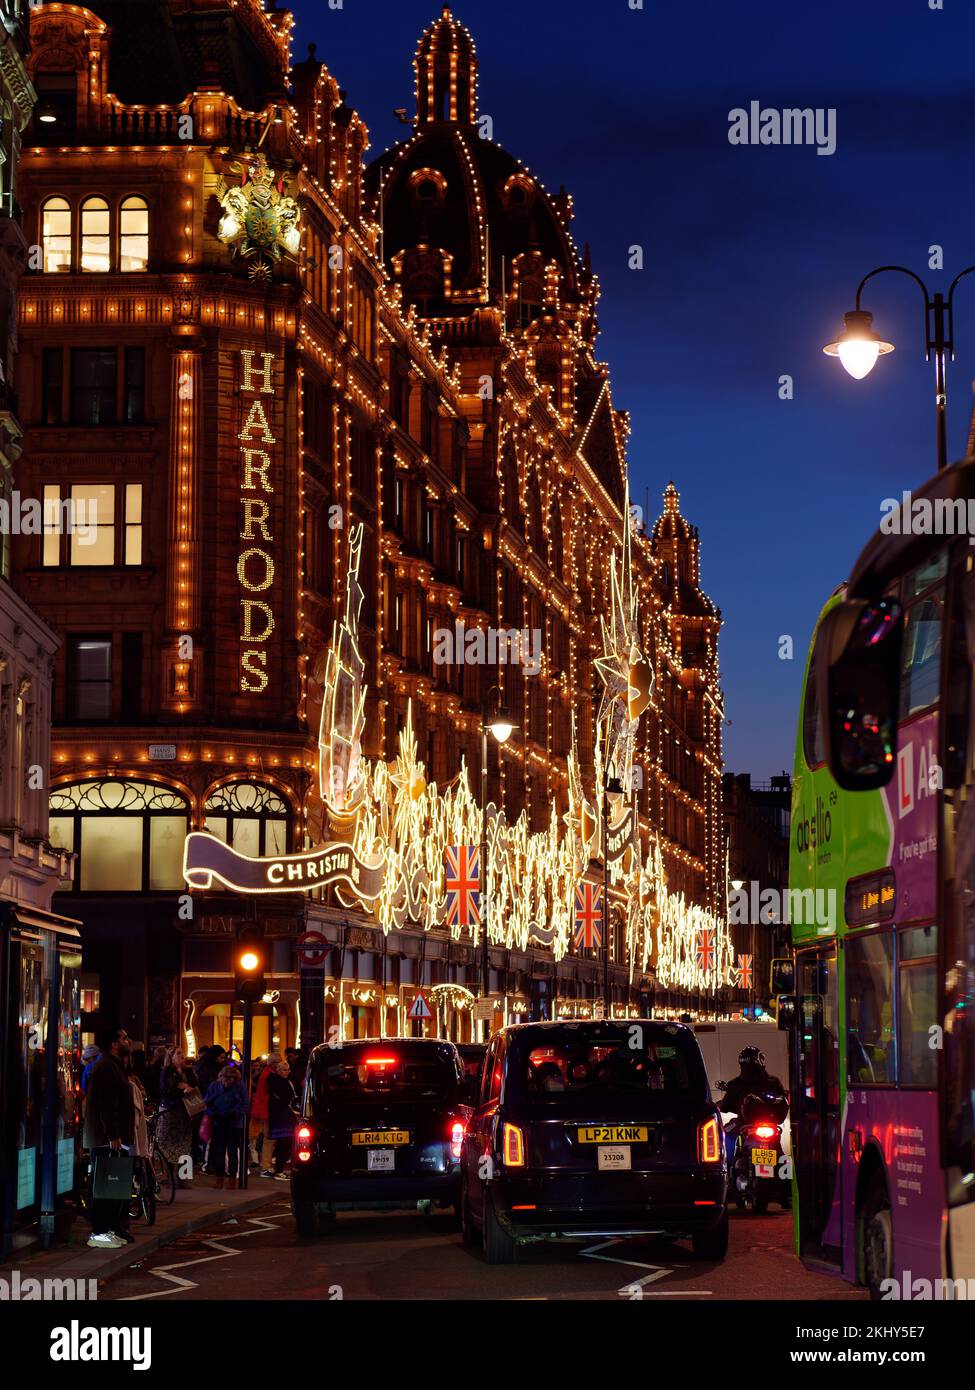 Harrods célèbre grand magasin à Knightsbridge avec une exposition de Noël. Piétons et circulation à l'extérieur, y compris les taxis. Londres. Banque D'Images